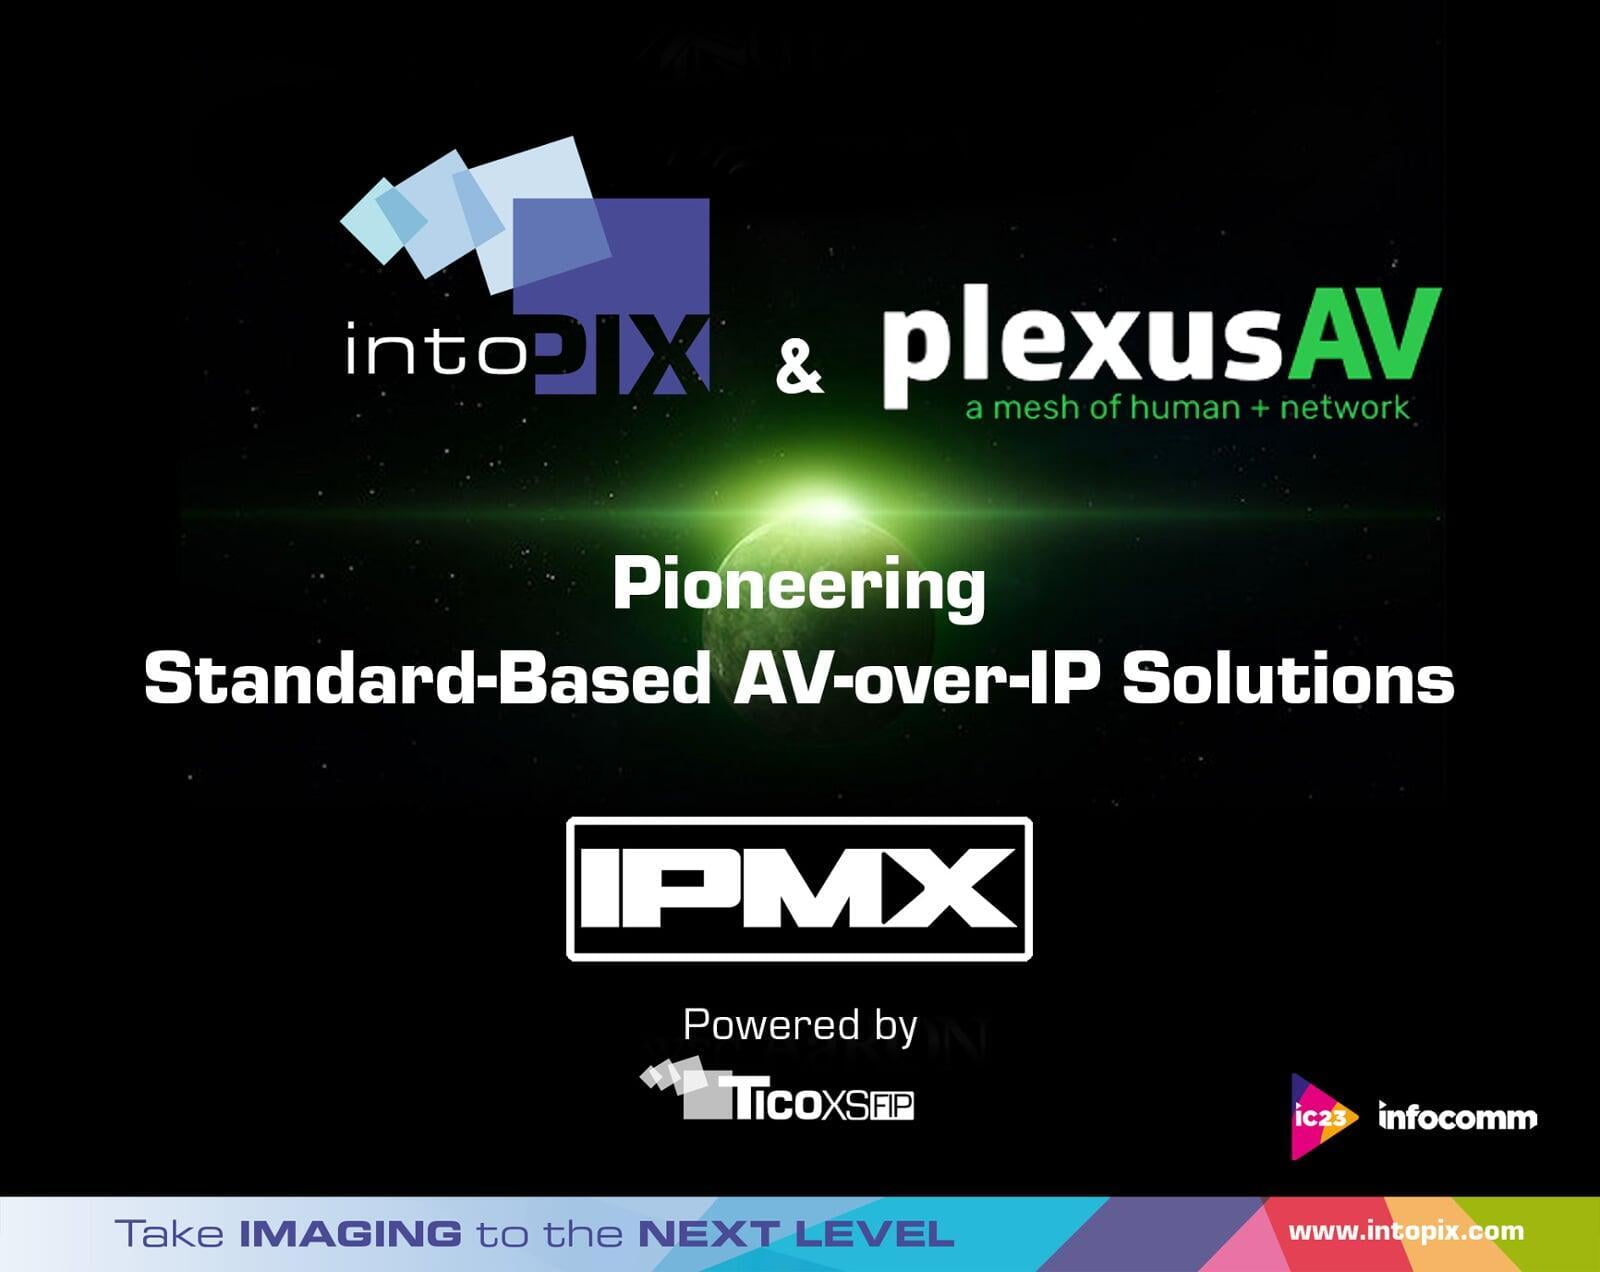 intoPIX et PlexusAV Pioneer IPMX Solutions AV-over-IP basées sur la norme